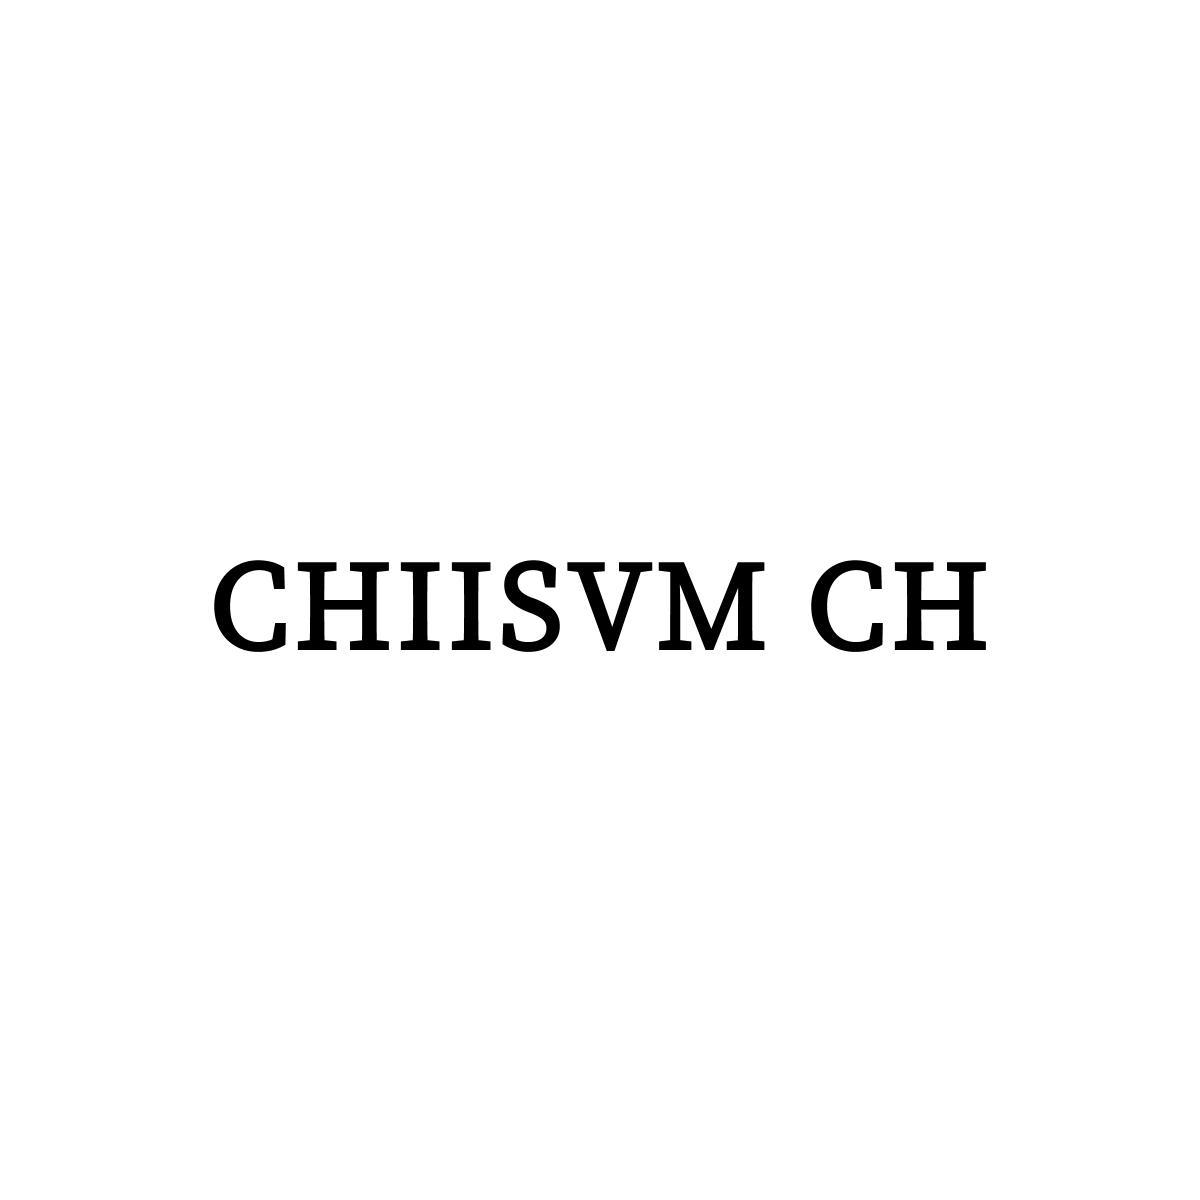 CHIISVM CH